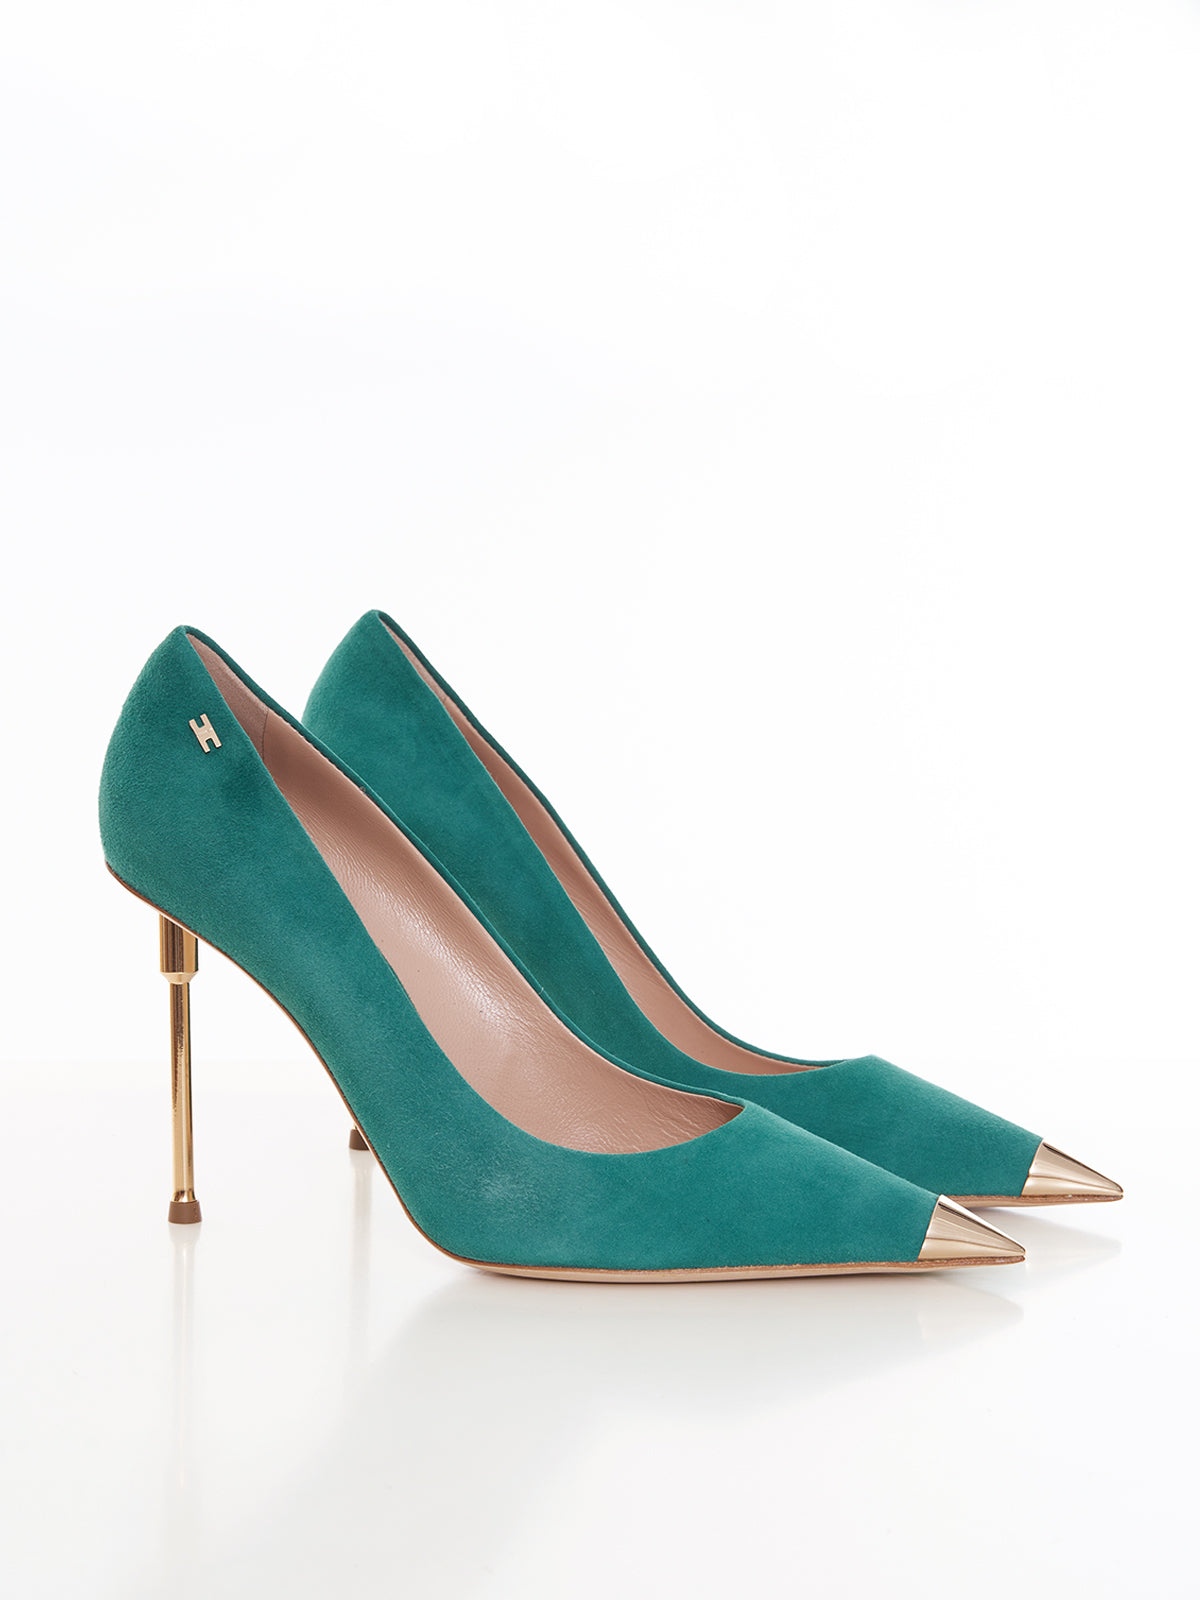 Suede pump with gold sculptured heel